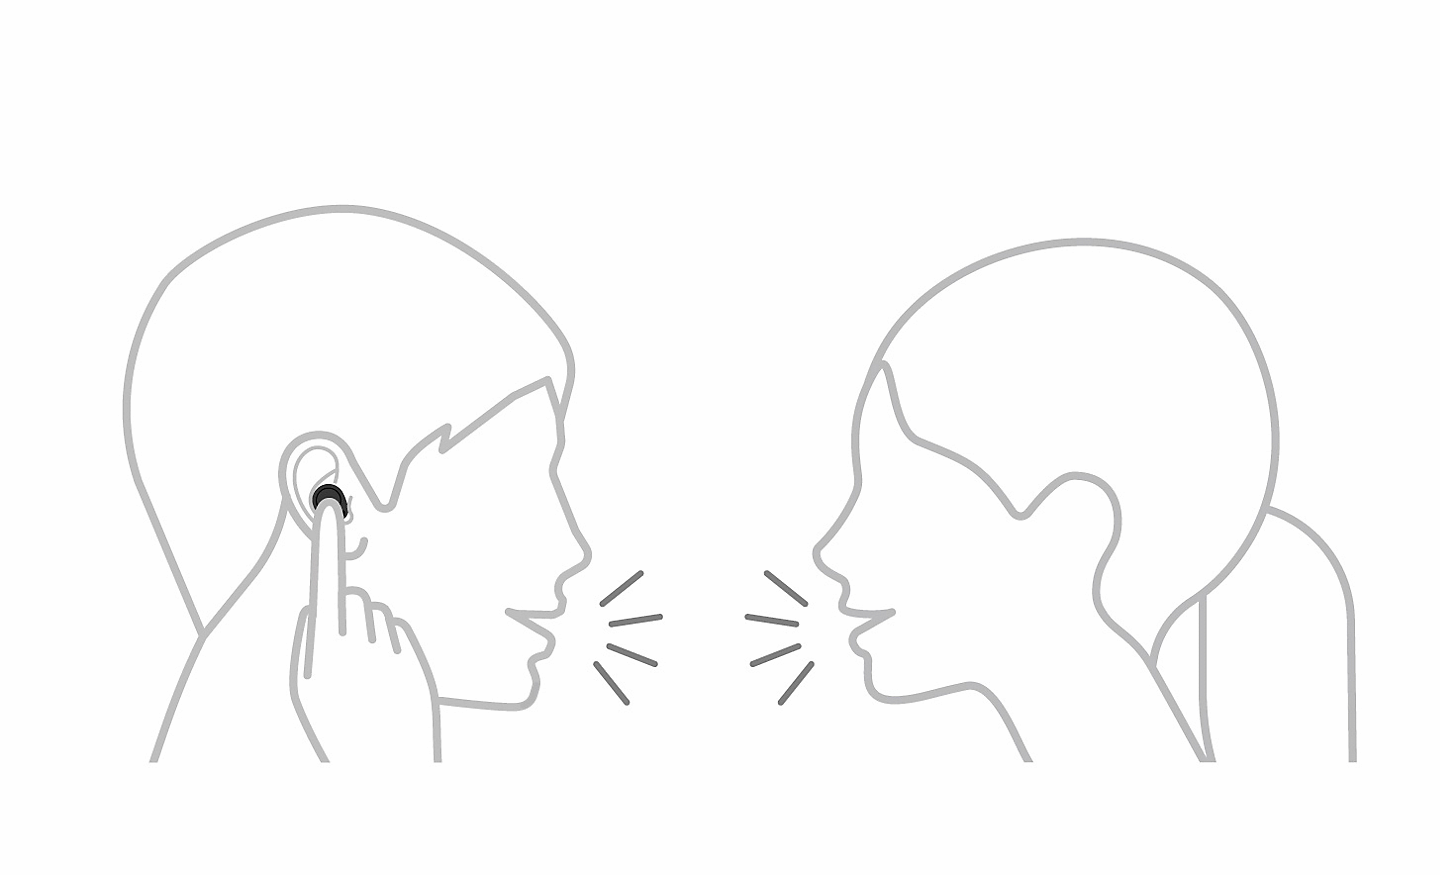 兩個人在說話的線稿圖，一個人用一根手指觸摸耳機，左上角有一個暫停圖示